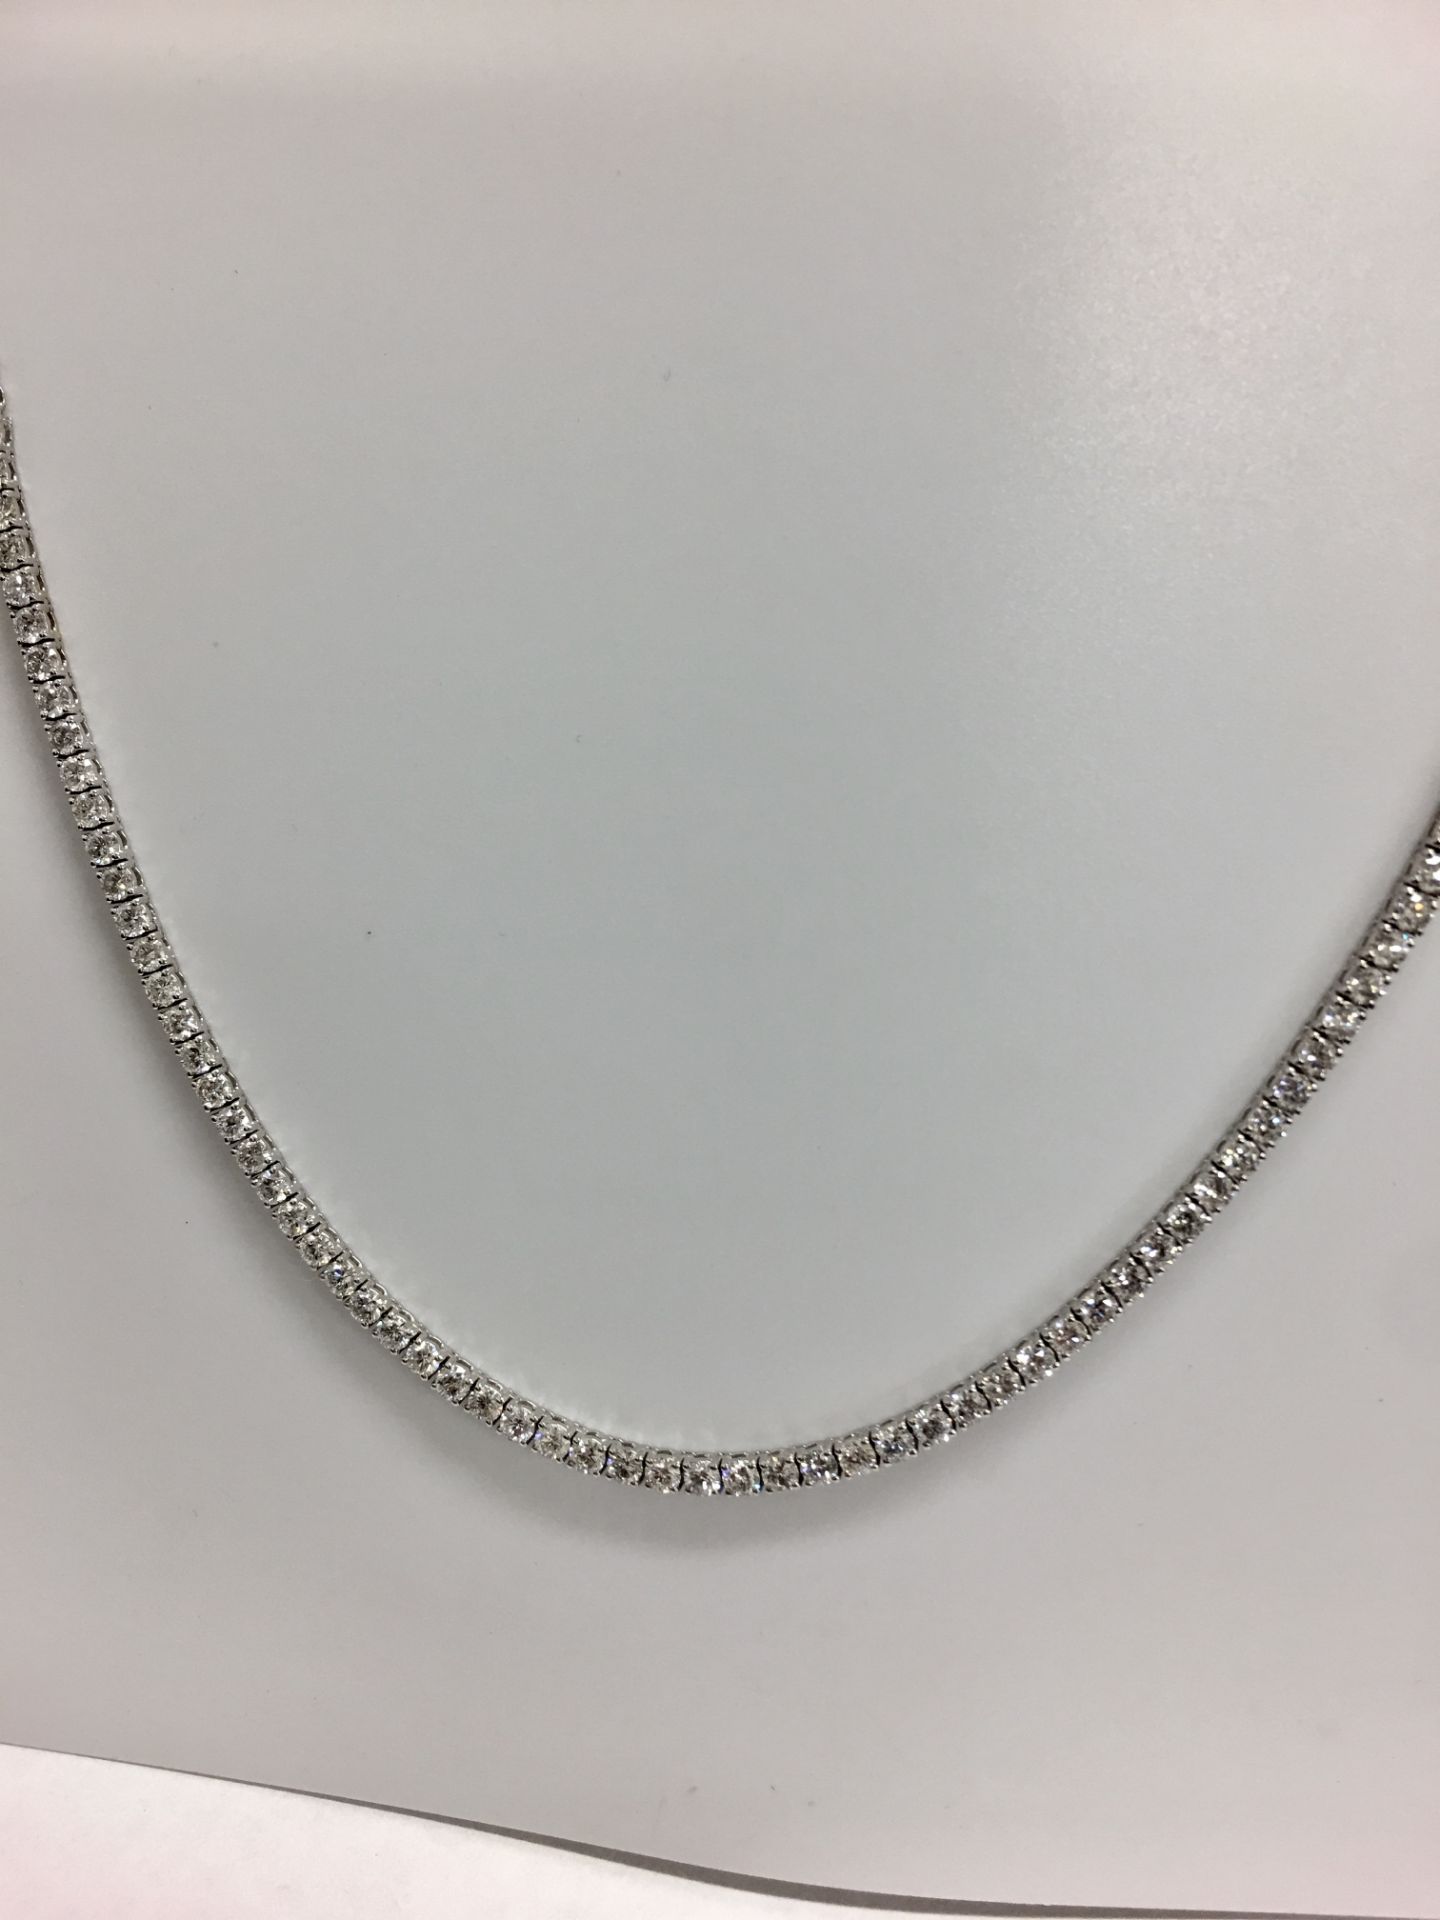 9.80ct 18ct white gold diamond necklace ,9.80ct h colour si grade diamonds,21.3gms 18ct white - Image 6 of 10